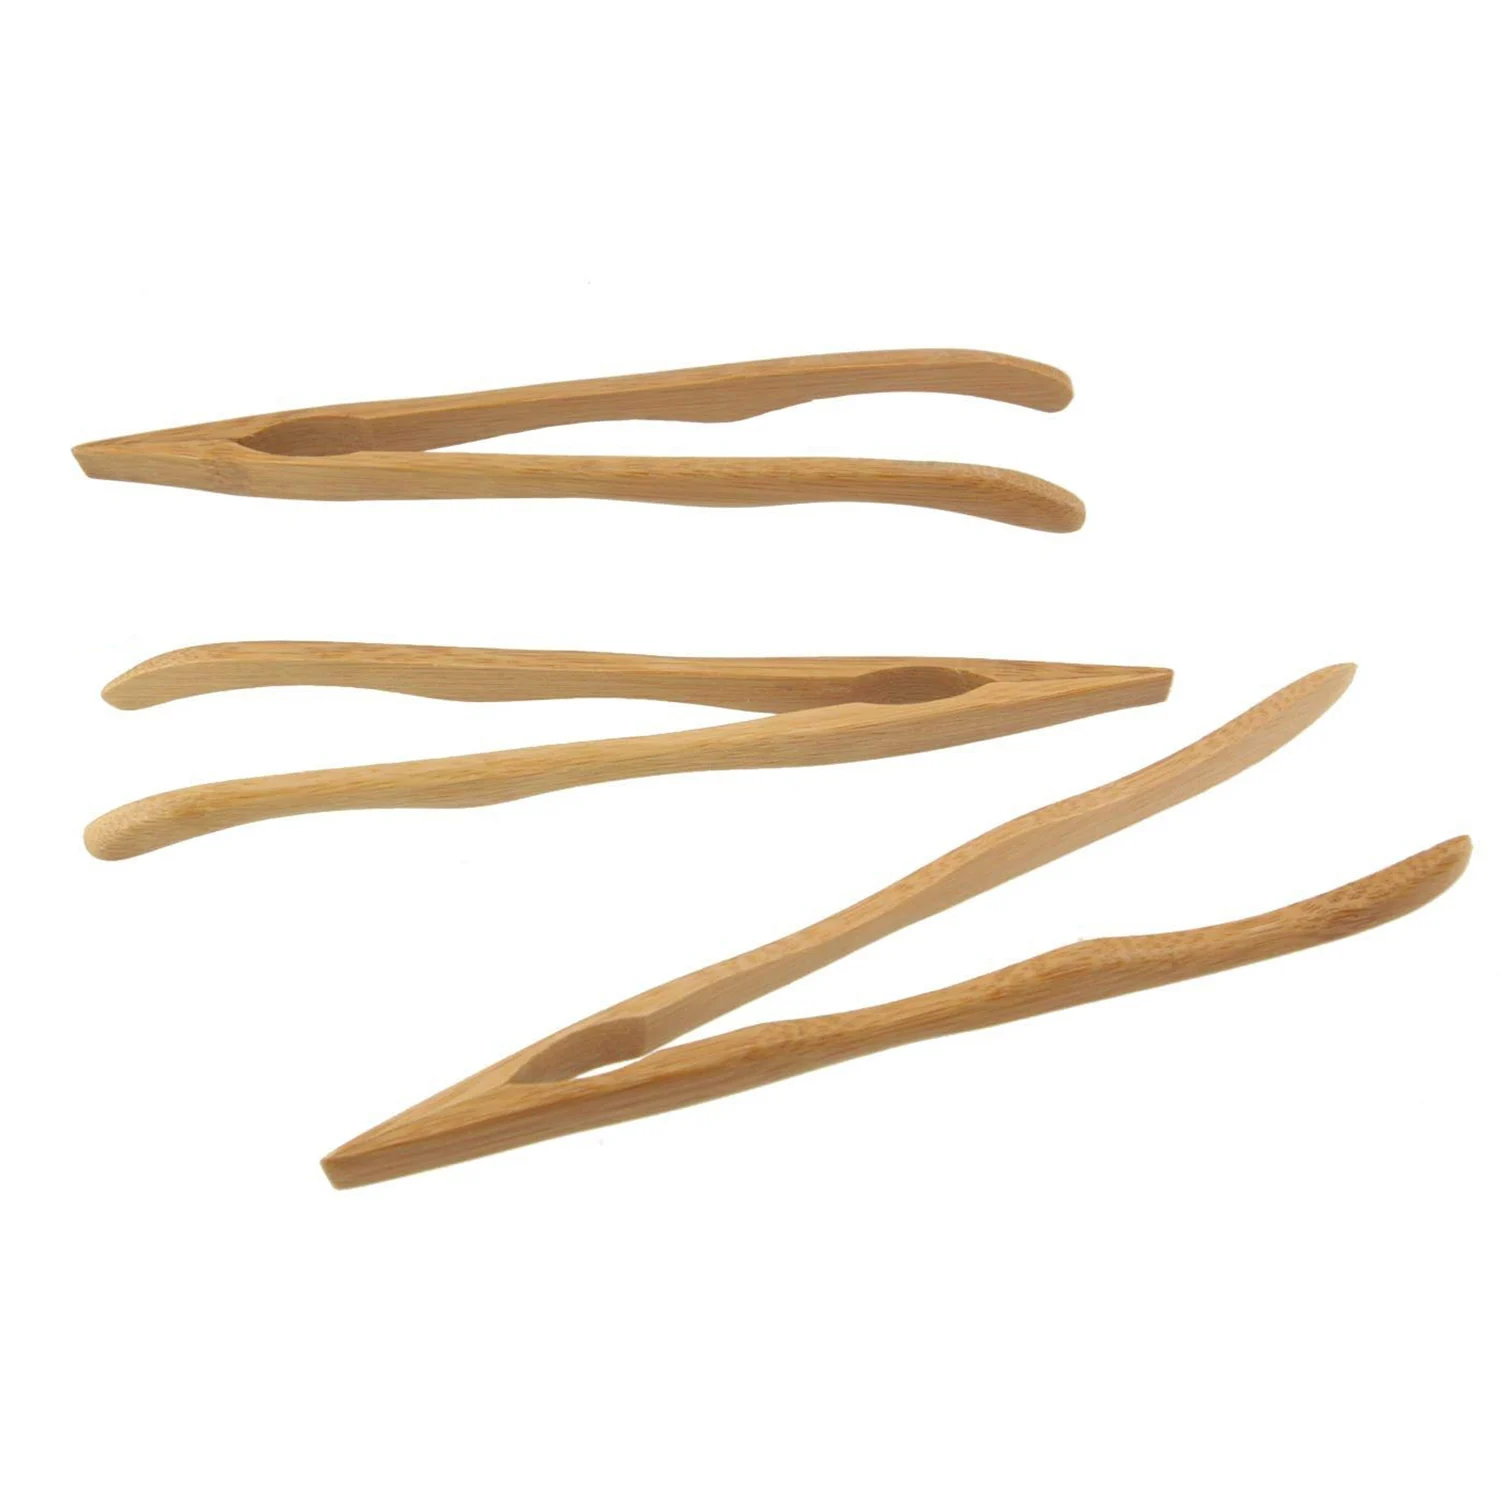 Горячая 16 см многоразовый бамбуковый щипцы, изогнутые руки, деревянный цвет-10 штук-тосты щипцы